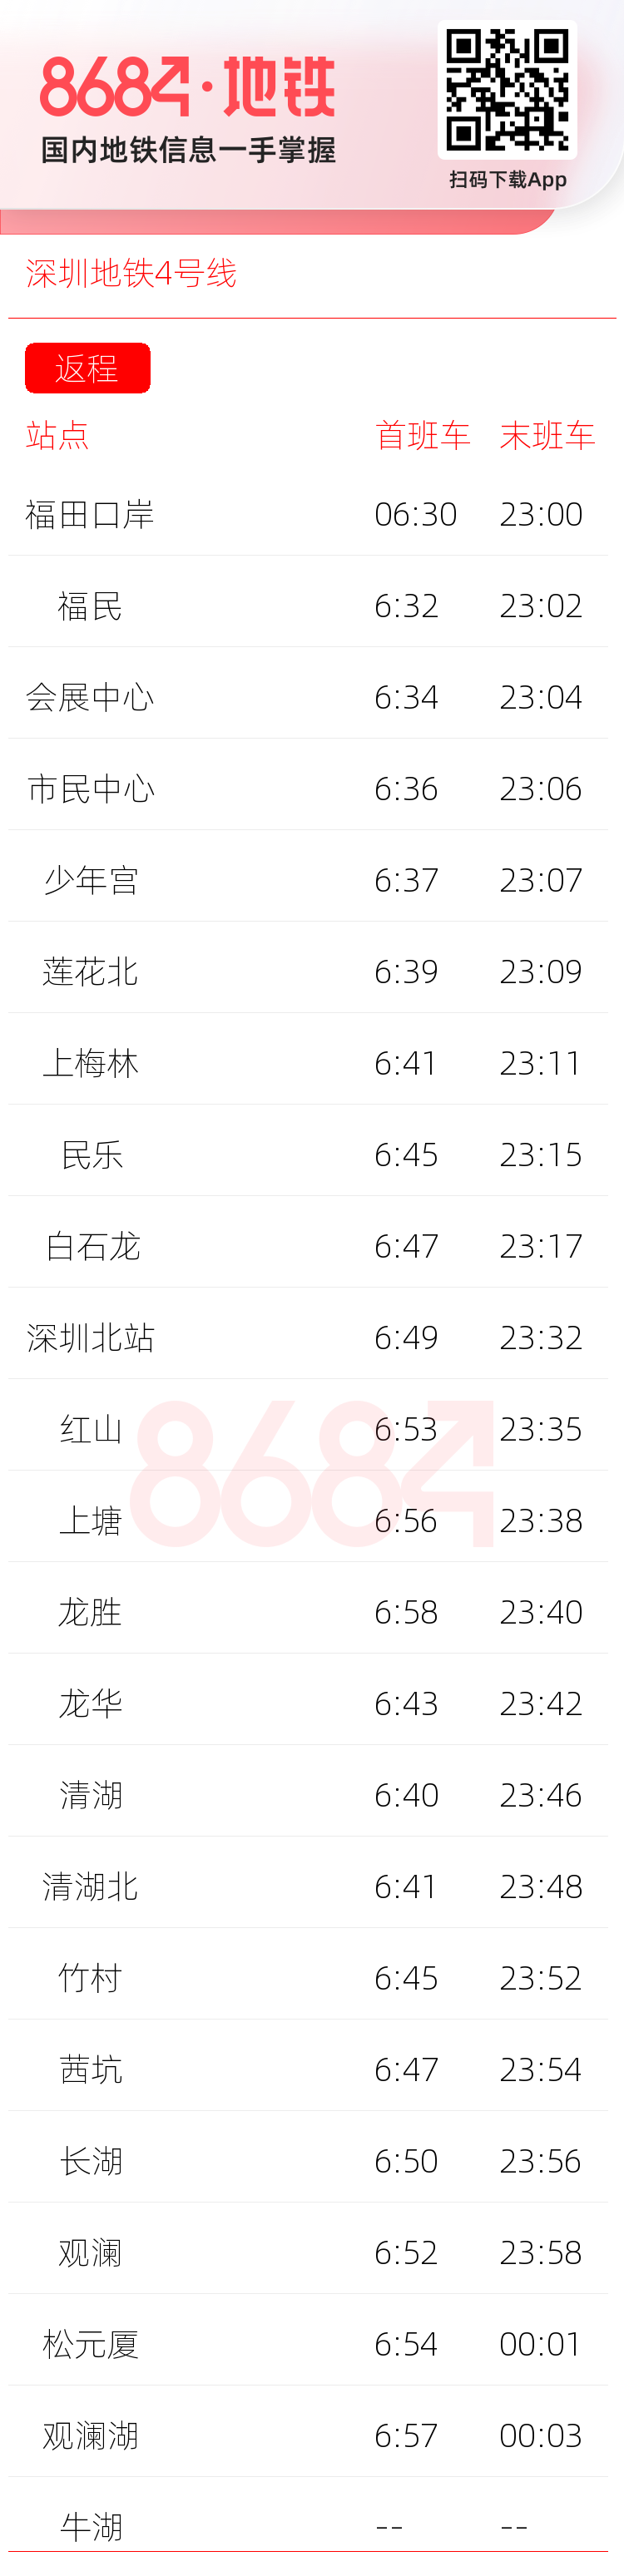 深圳地铁4号线运营时间表